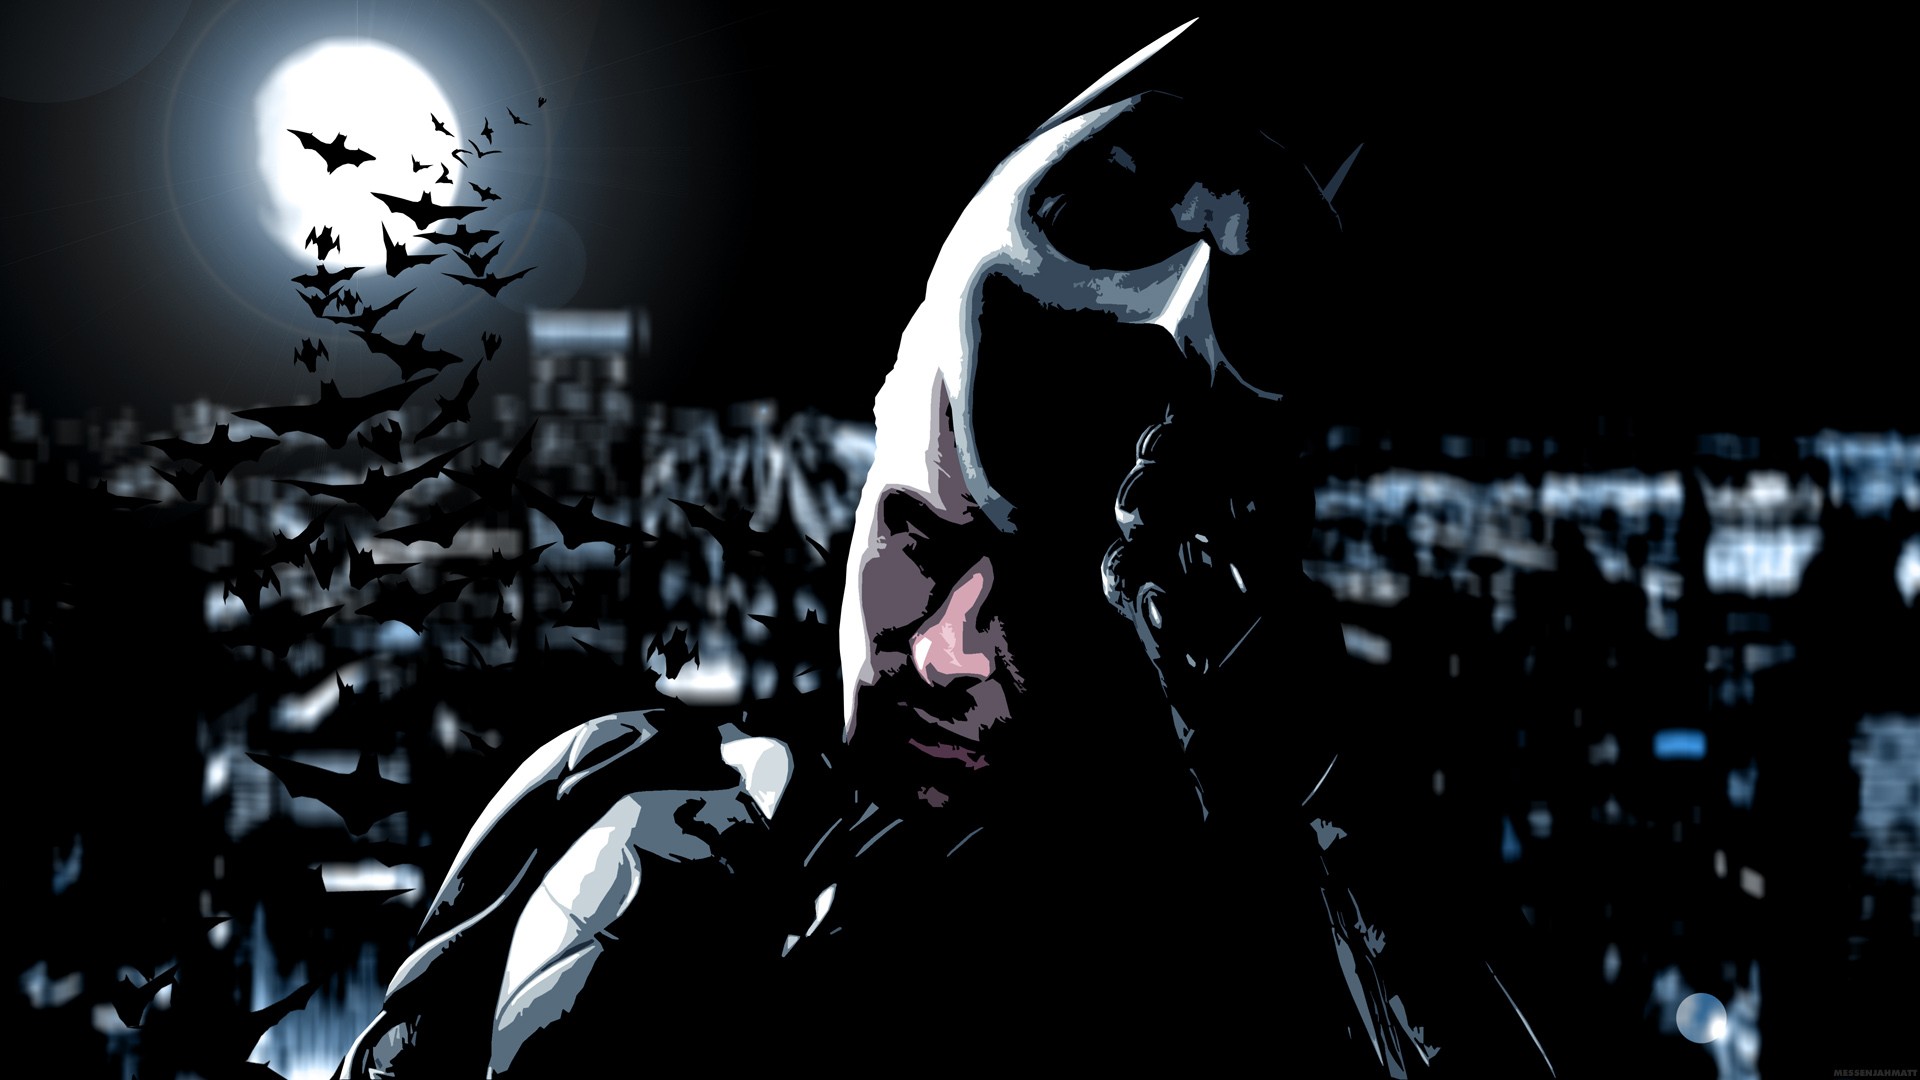 General 1920x1080 movies Batman The Dark Knight MessenjahMatt Moon bats mask artwork